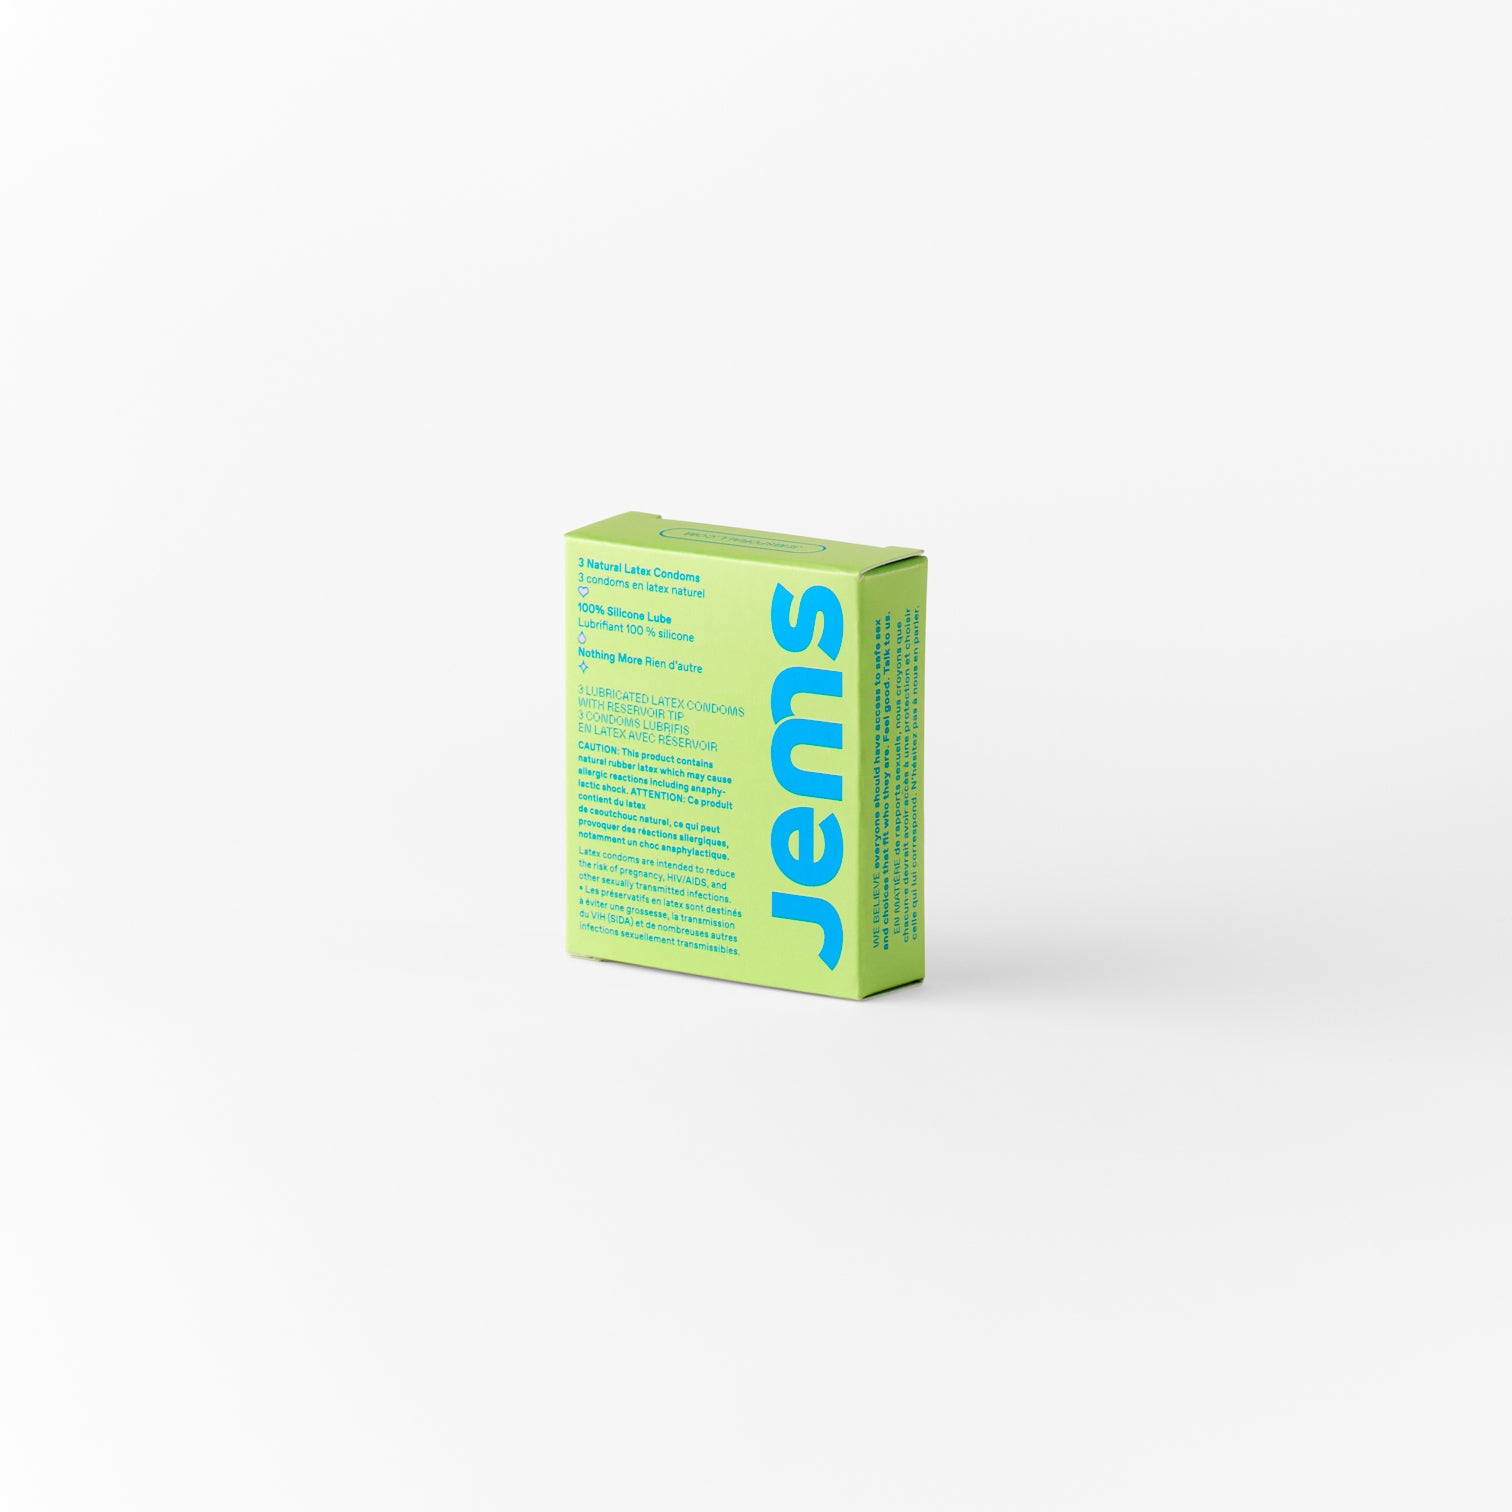 Soft AF Square Case + 3 Pack + 5x5ml Pocket Lube